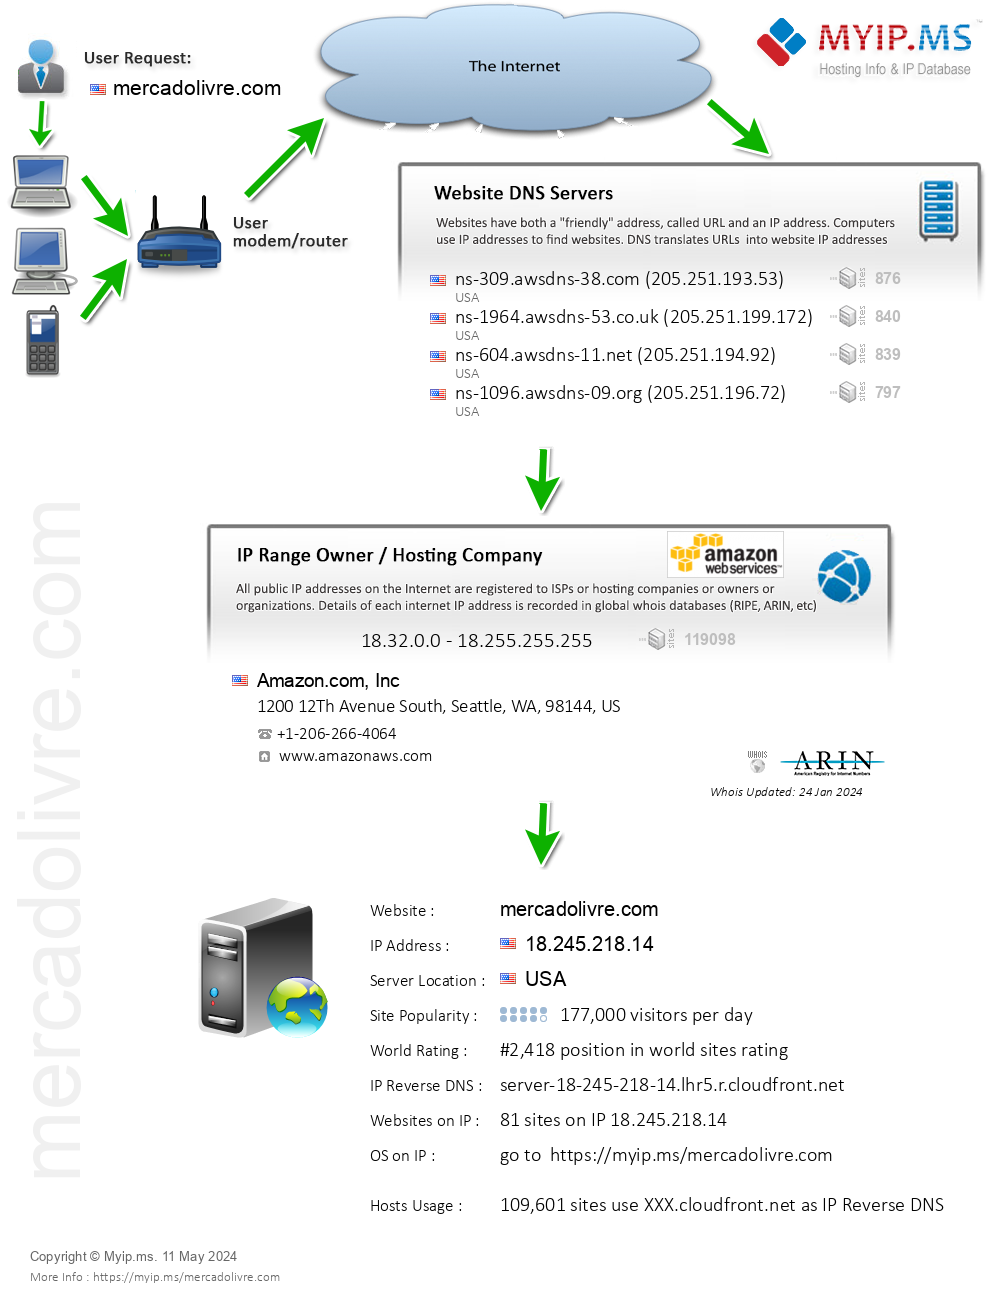 Mercadolivre.com - Website Hosting Visual IP Diagram